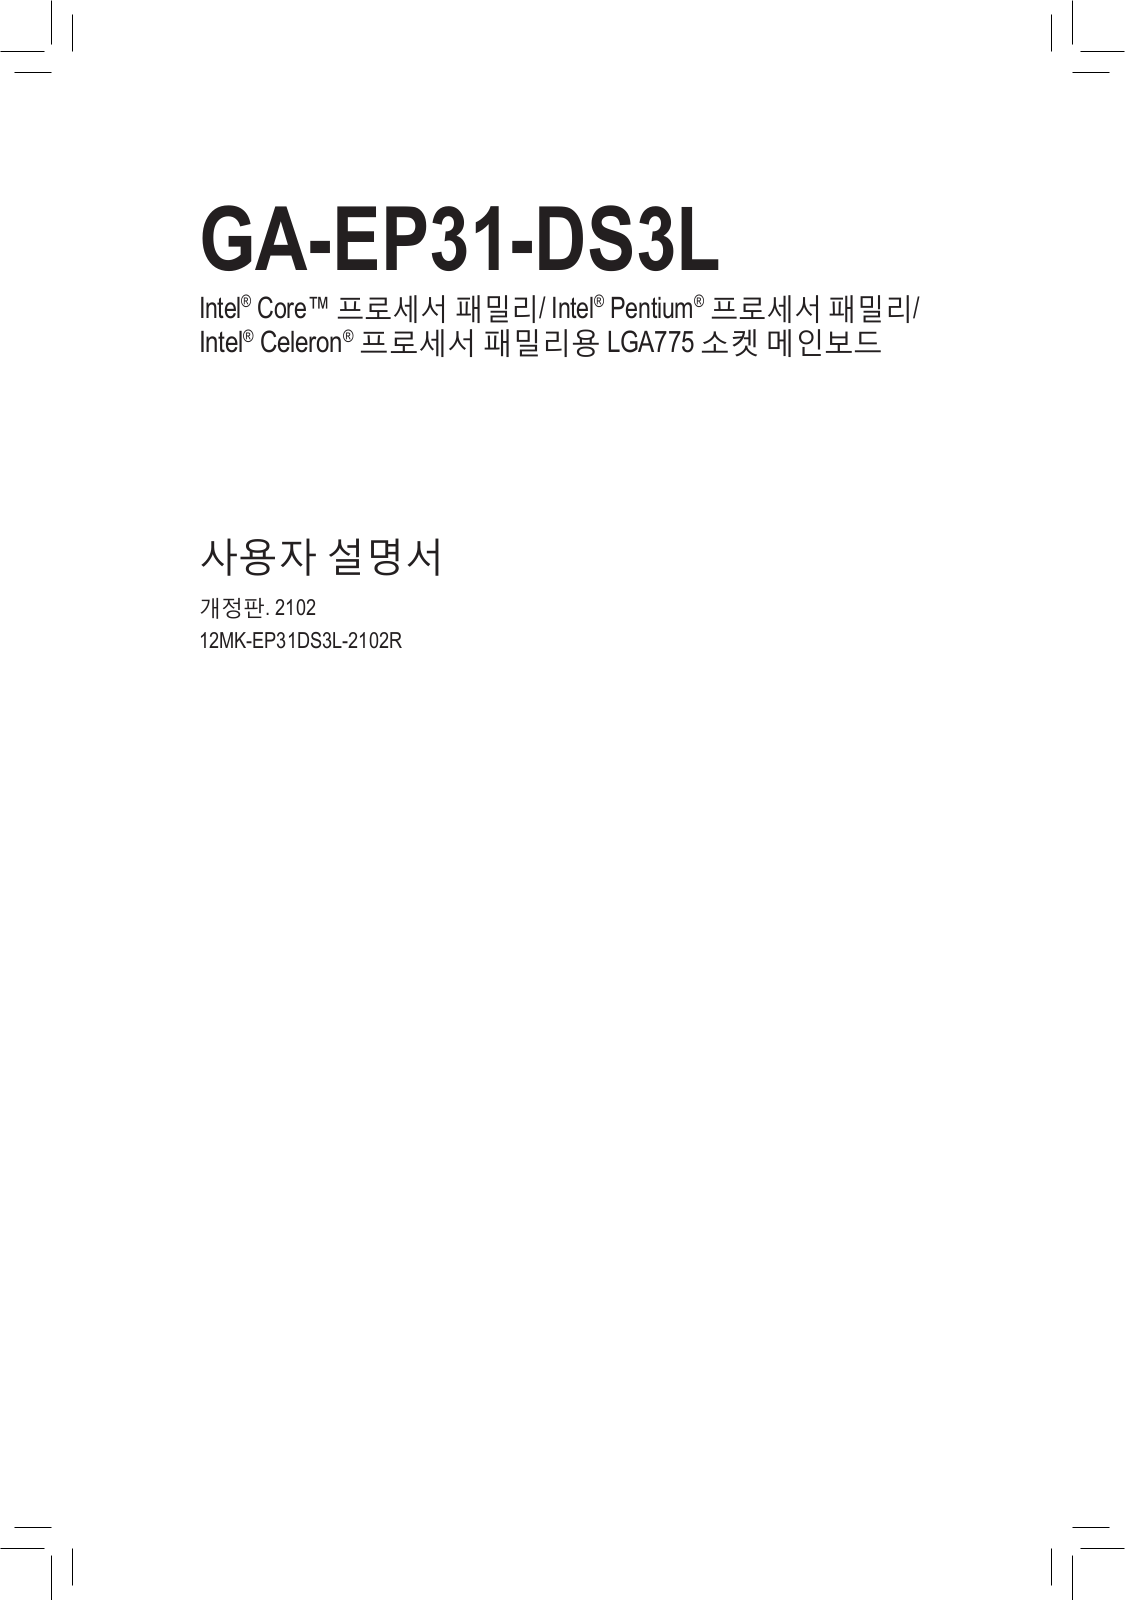 Gigabyte GA-EP31-DS3L User Manual